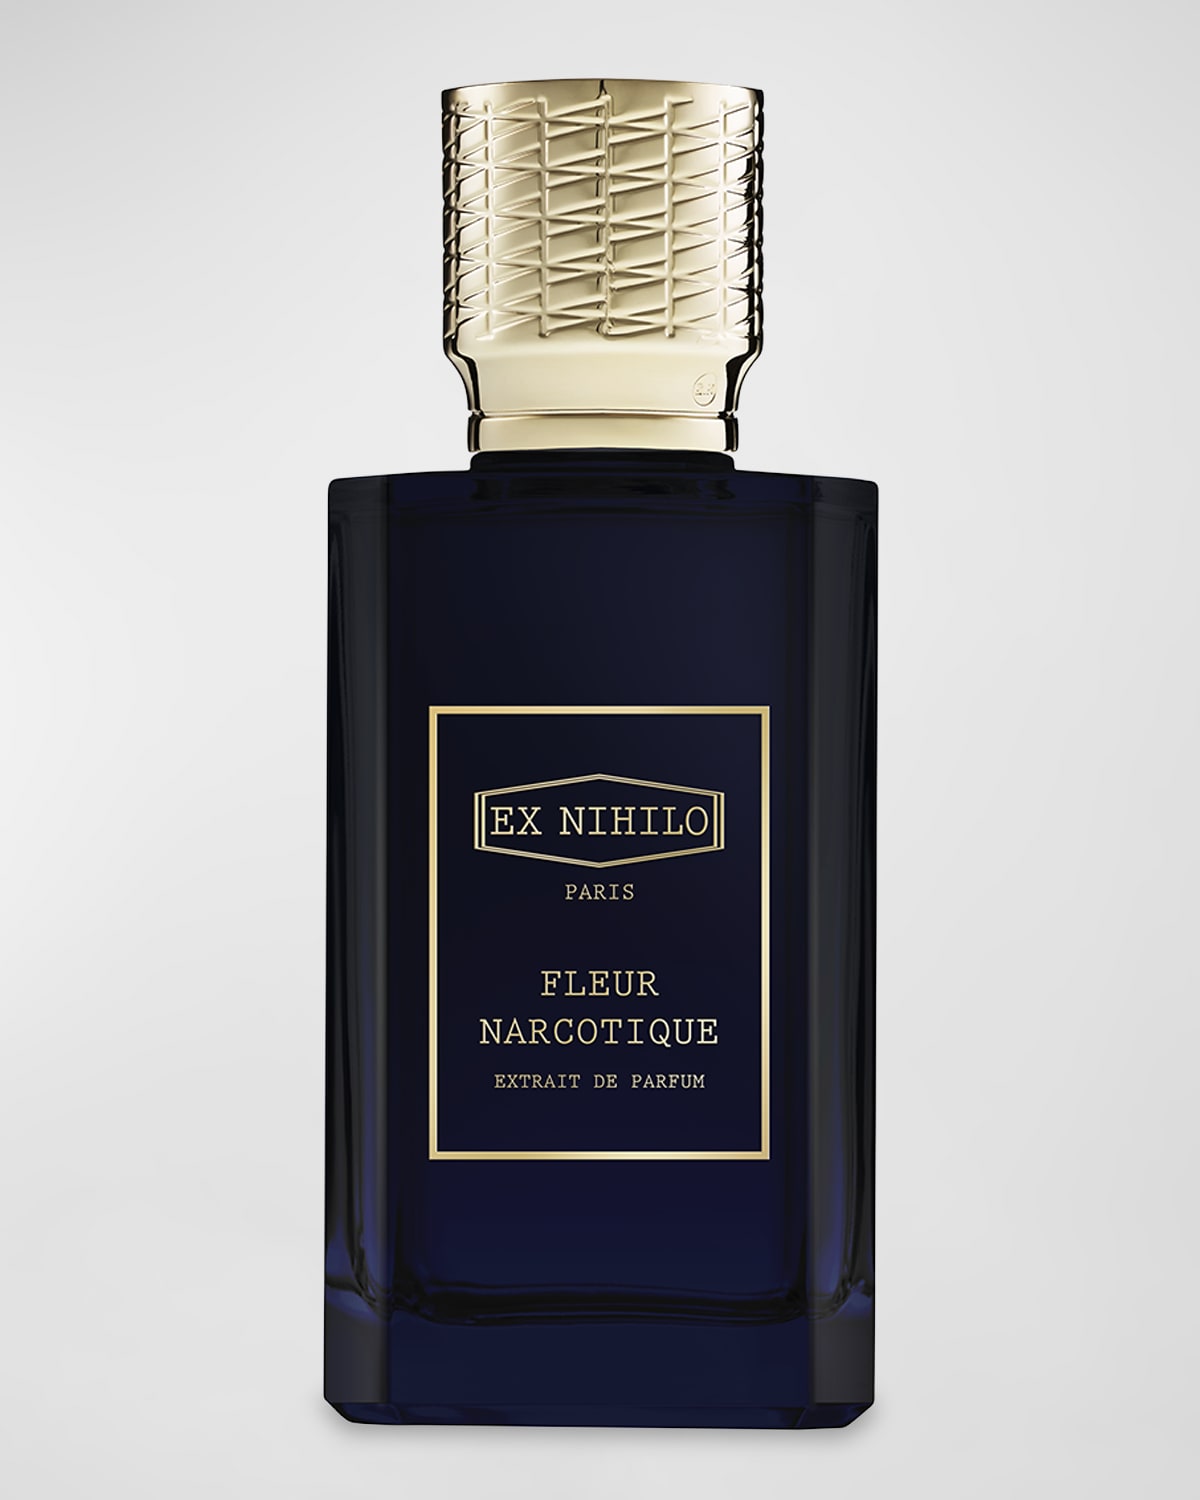 Fleur Narcotique Extrait de Parfum, 3.4 oz.